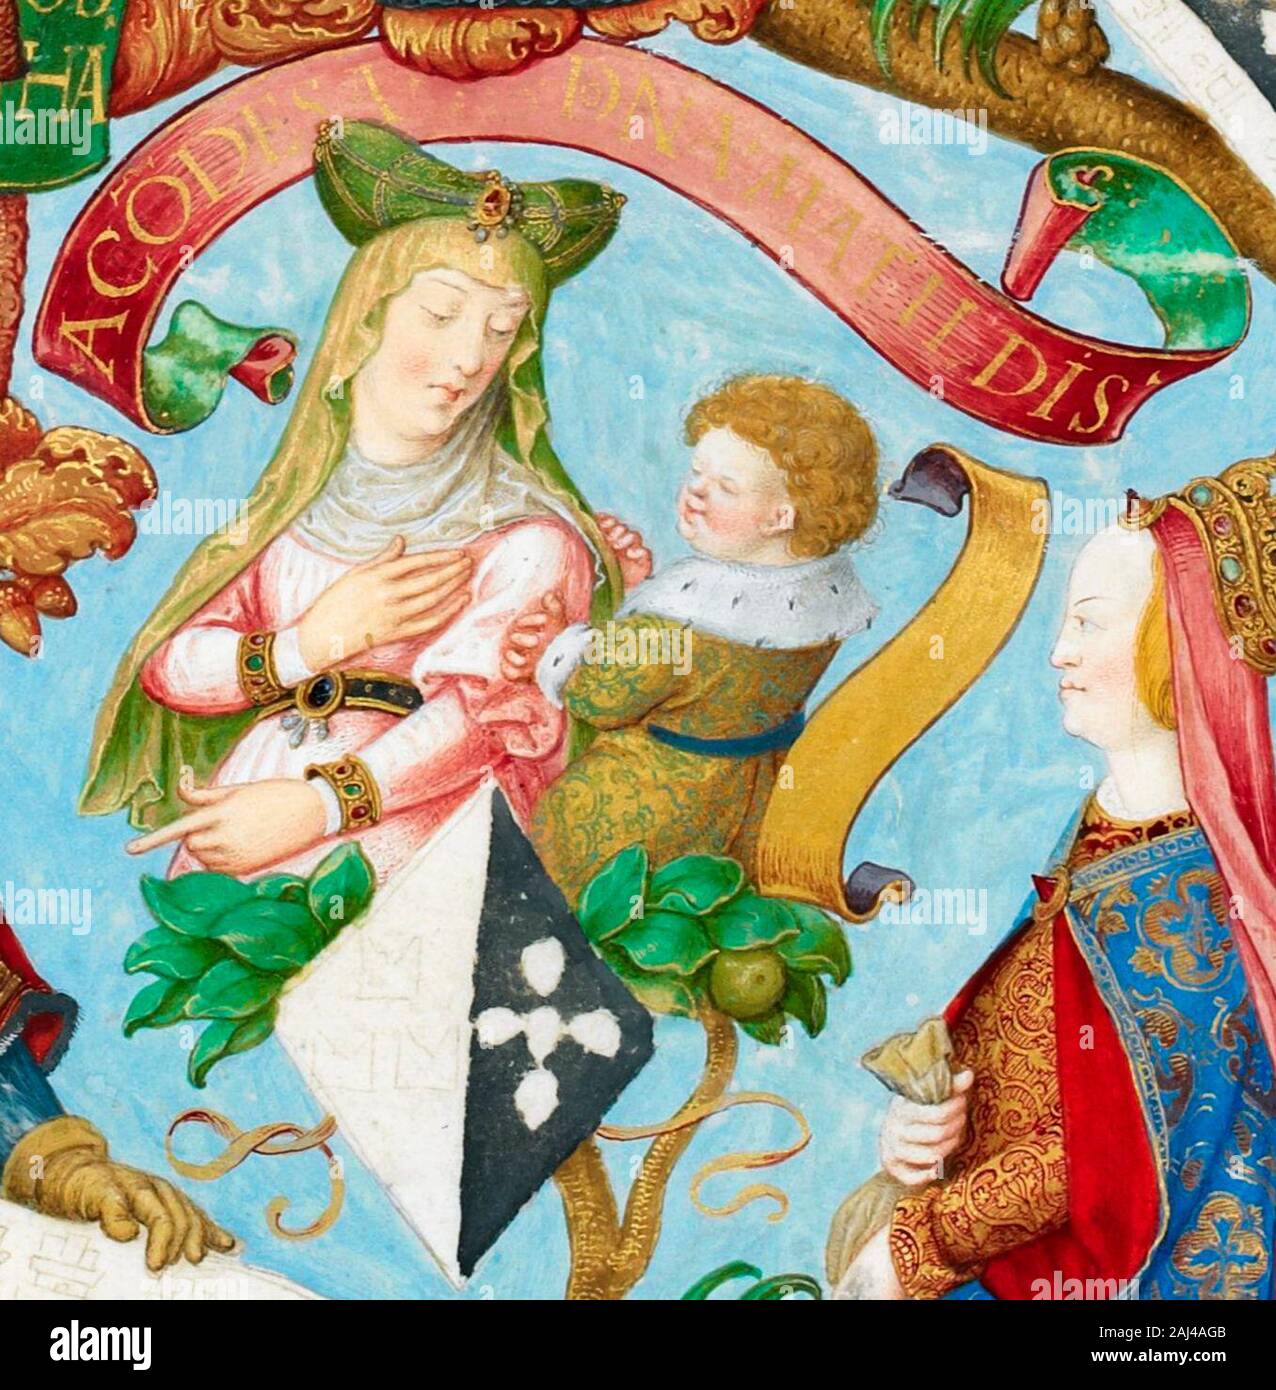 Matilde II di Boulogne, contessa di Boulogne nella sua propria destra e Regina del Portogallo dal matrimonio di Re Afonso III dal 1248 fino al loro divorzio nel 1253. António de Holanda, circa 1530 Foto Stock